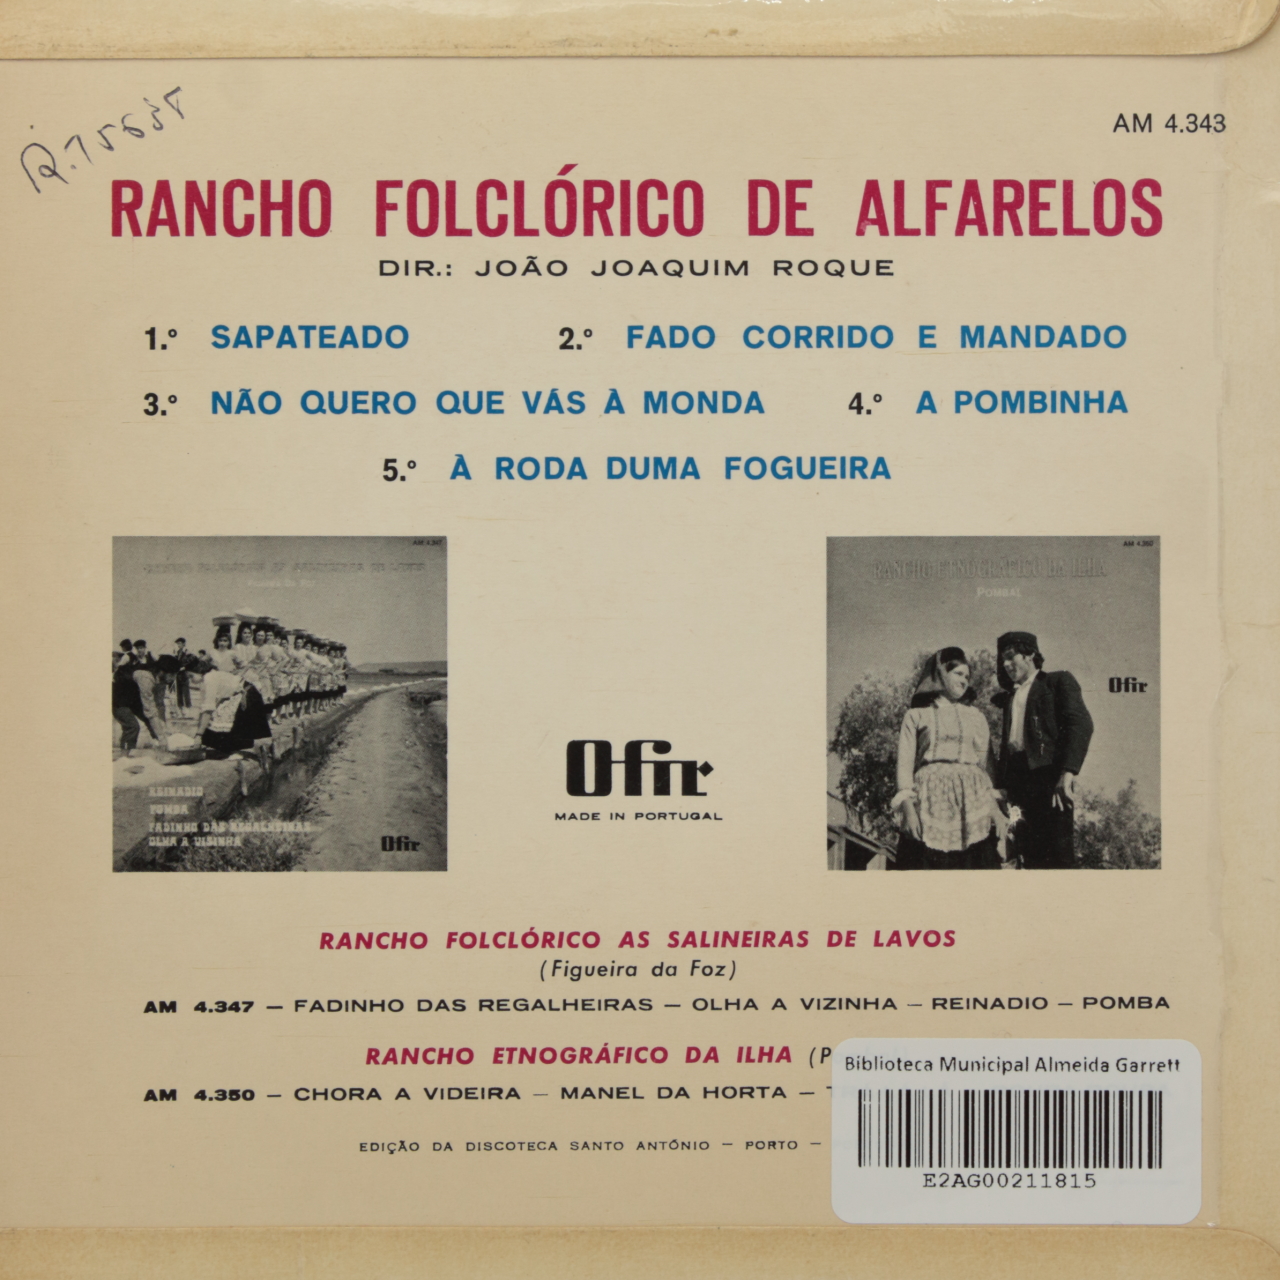 Rancho Folclórico de Alfarelos